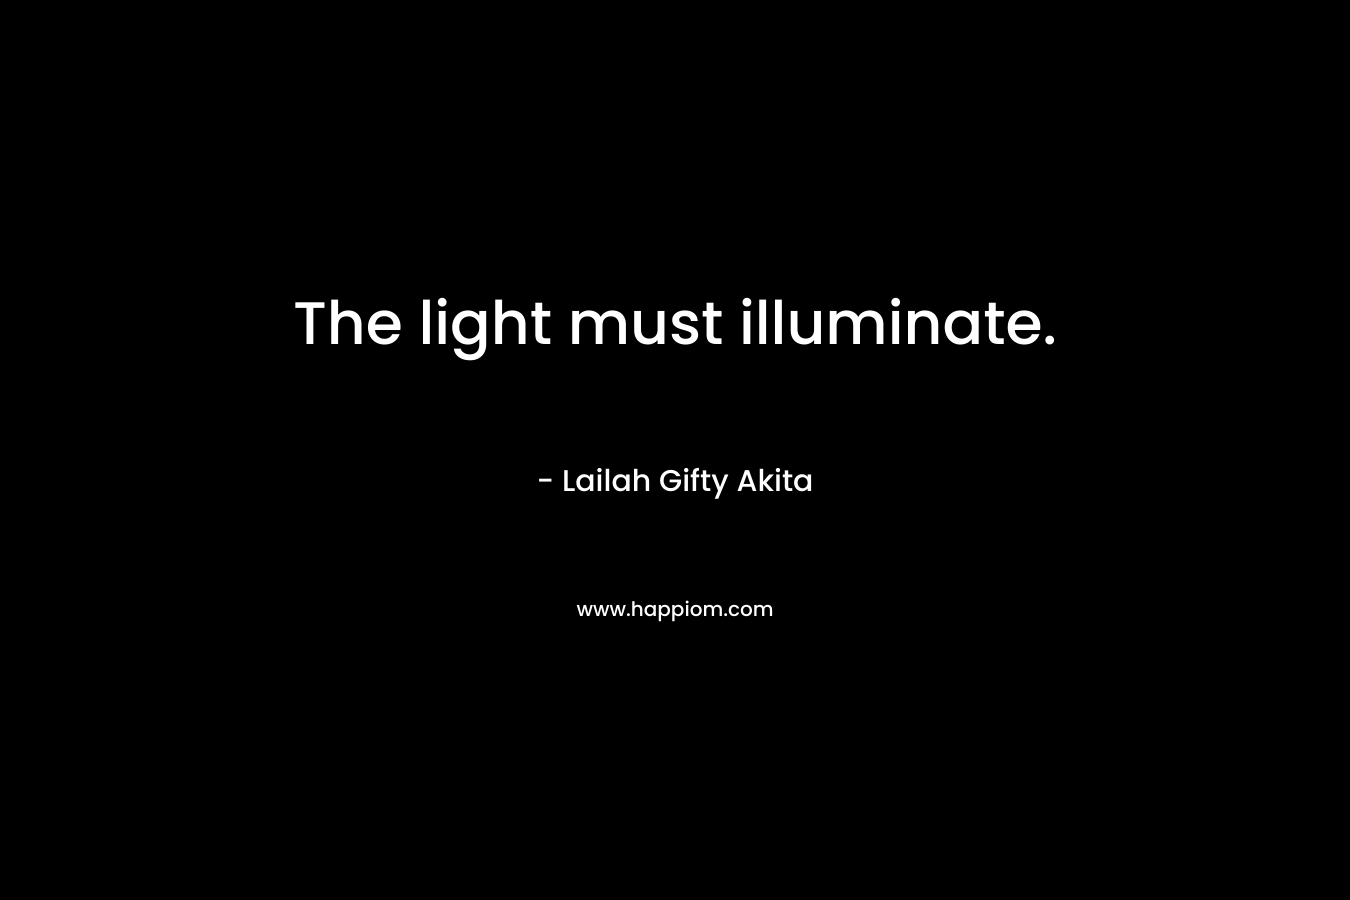 The light must illuminate.